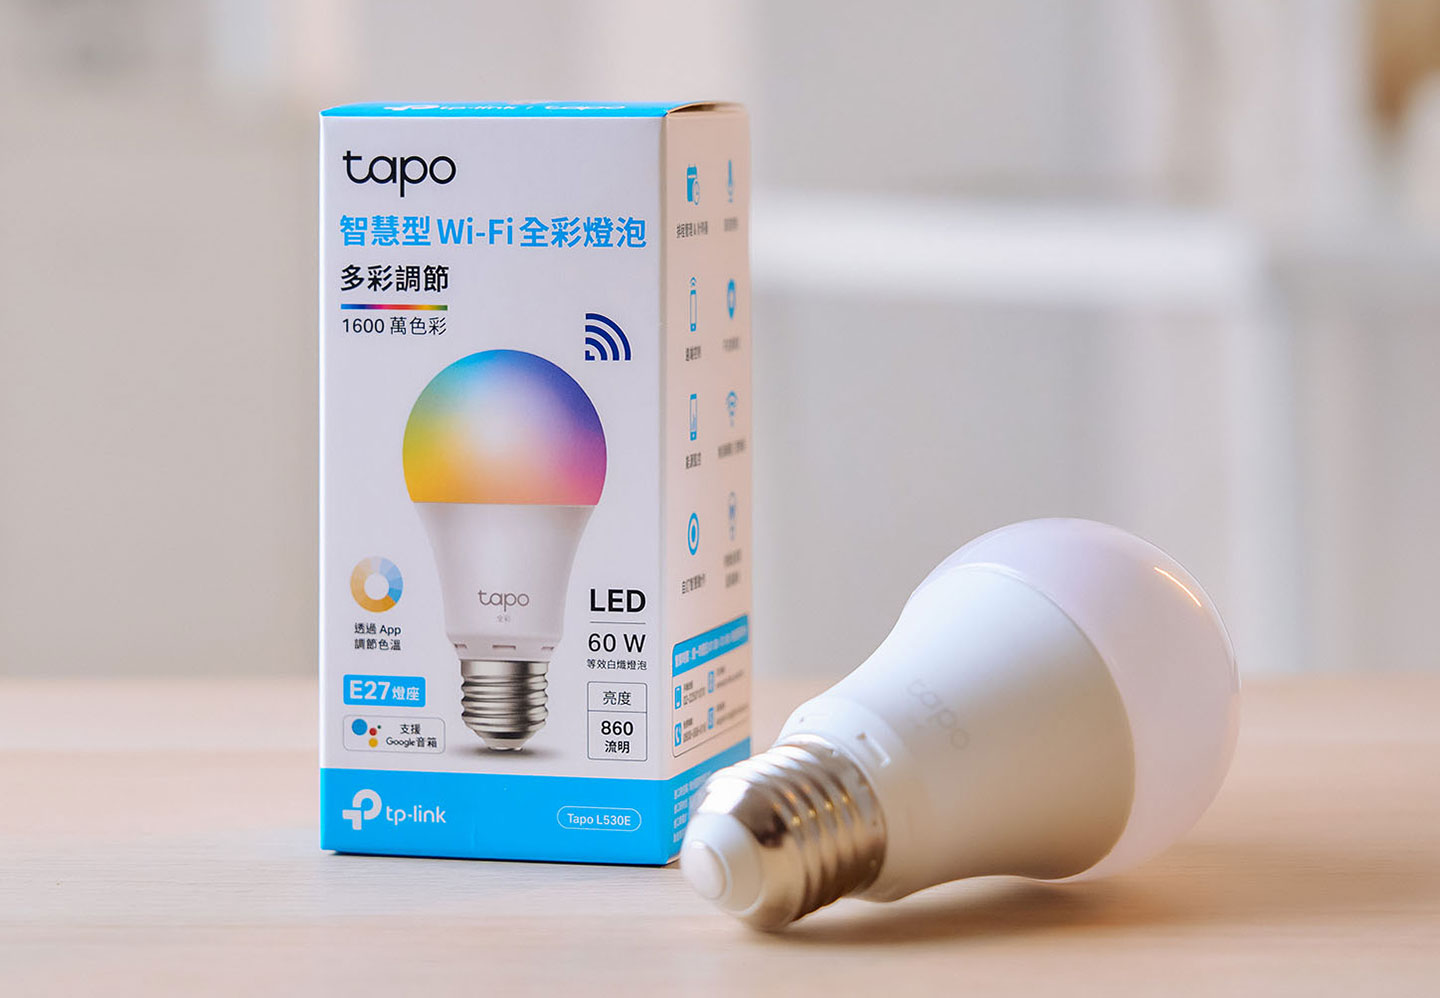 盒內的  Tapo L530E 智慧燈泡可與 E27 燈座相容，可以輕鬆將家的燈具升級為智慧控制功能，也有多達 1600 萬色彩可以調整。